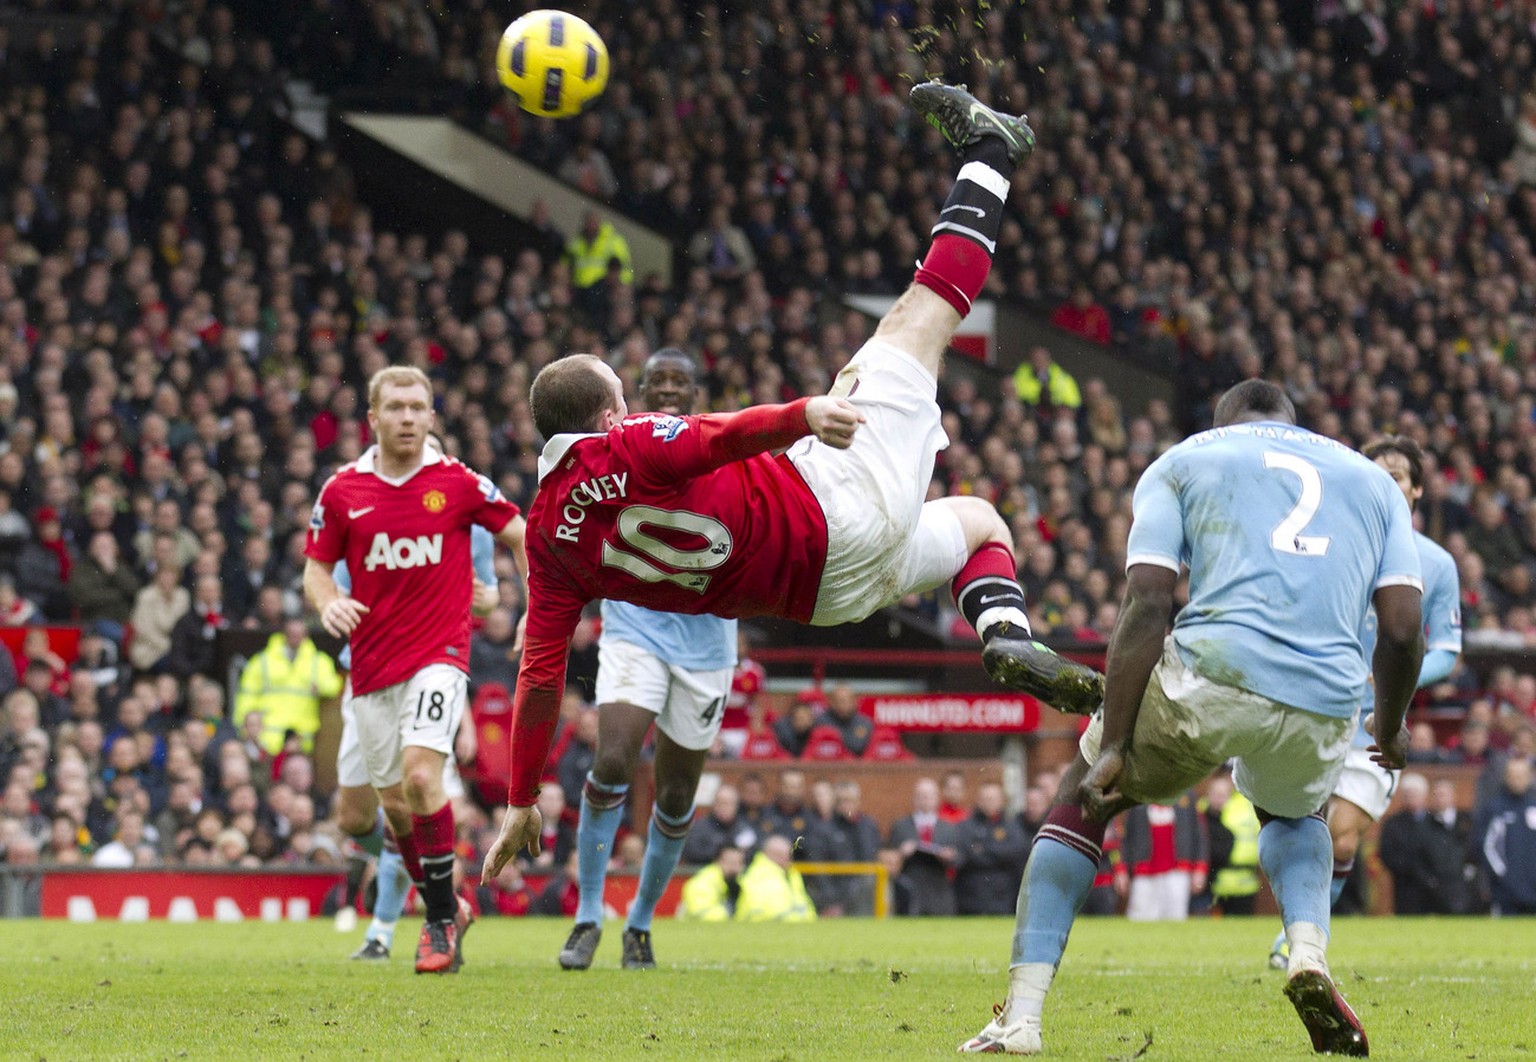 Diese Derby-Szene wird kein ManUtd-Fan je vergessen: Rooneys perfekter Fallrückzieher 2011.